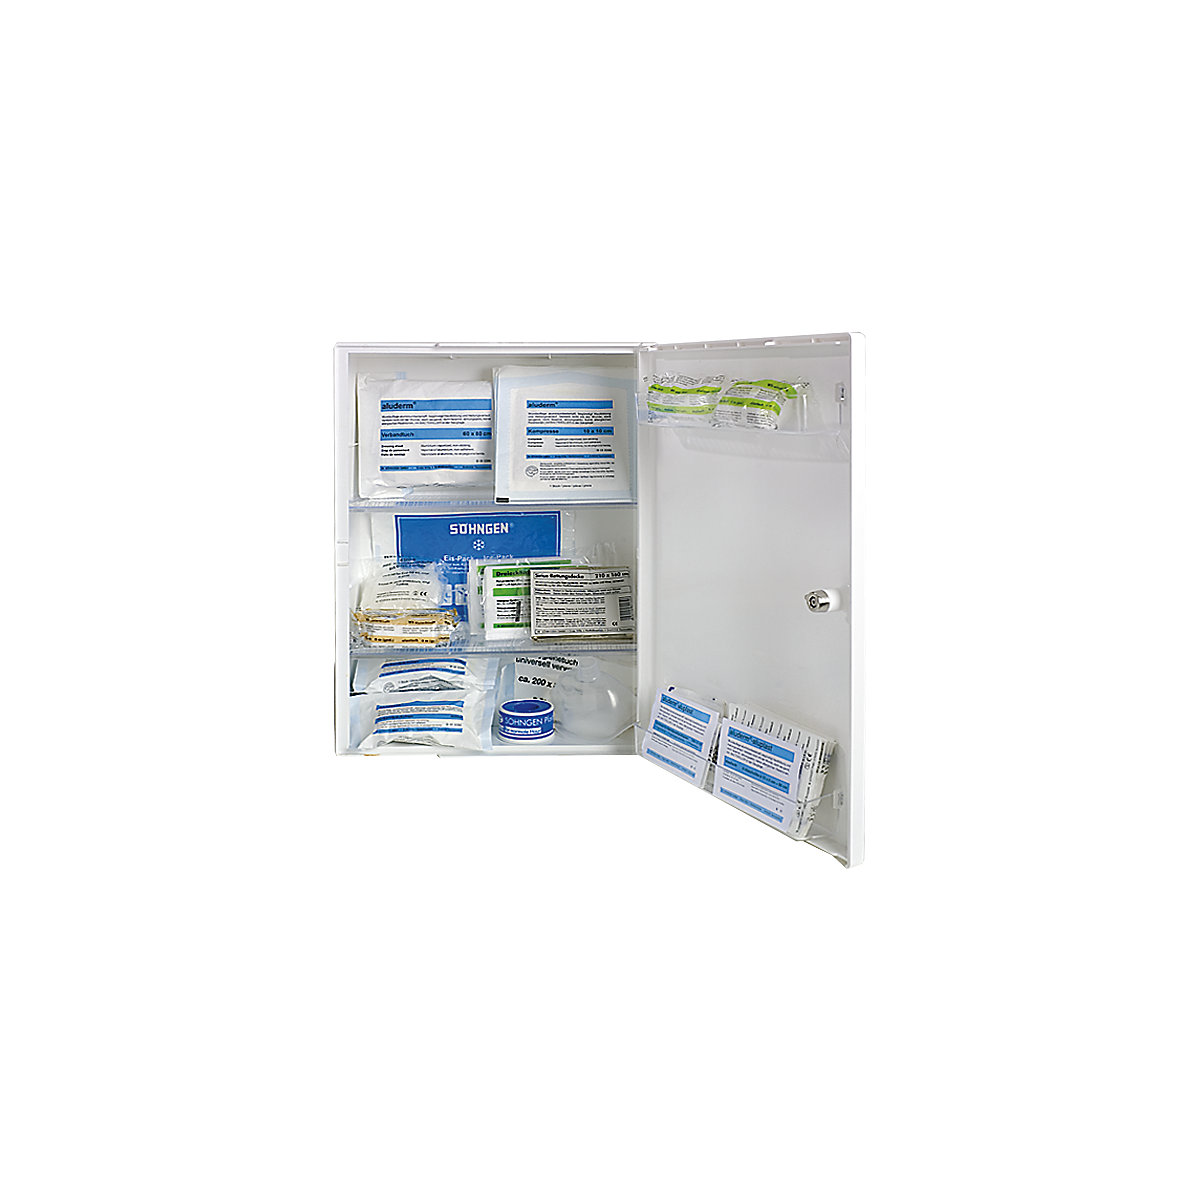 SÖHNGEN – Armoire à pharmacie conforme à la norme DIN 13157, équipé, blanc, profondeur 150 mm, h x l 429 x 315 mm